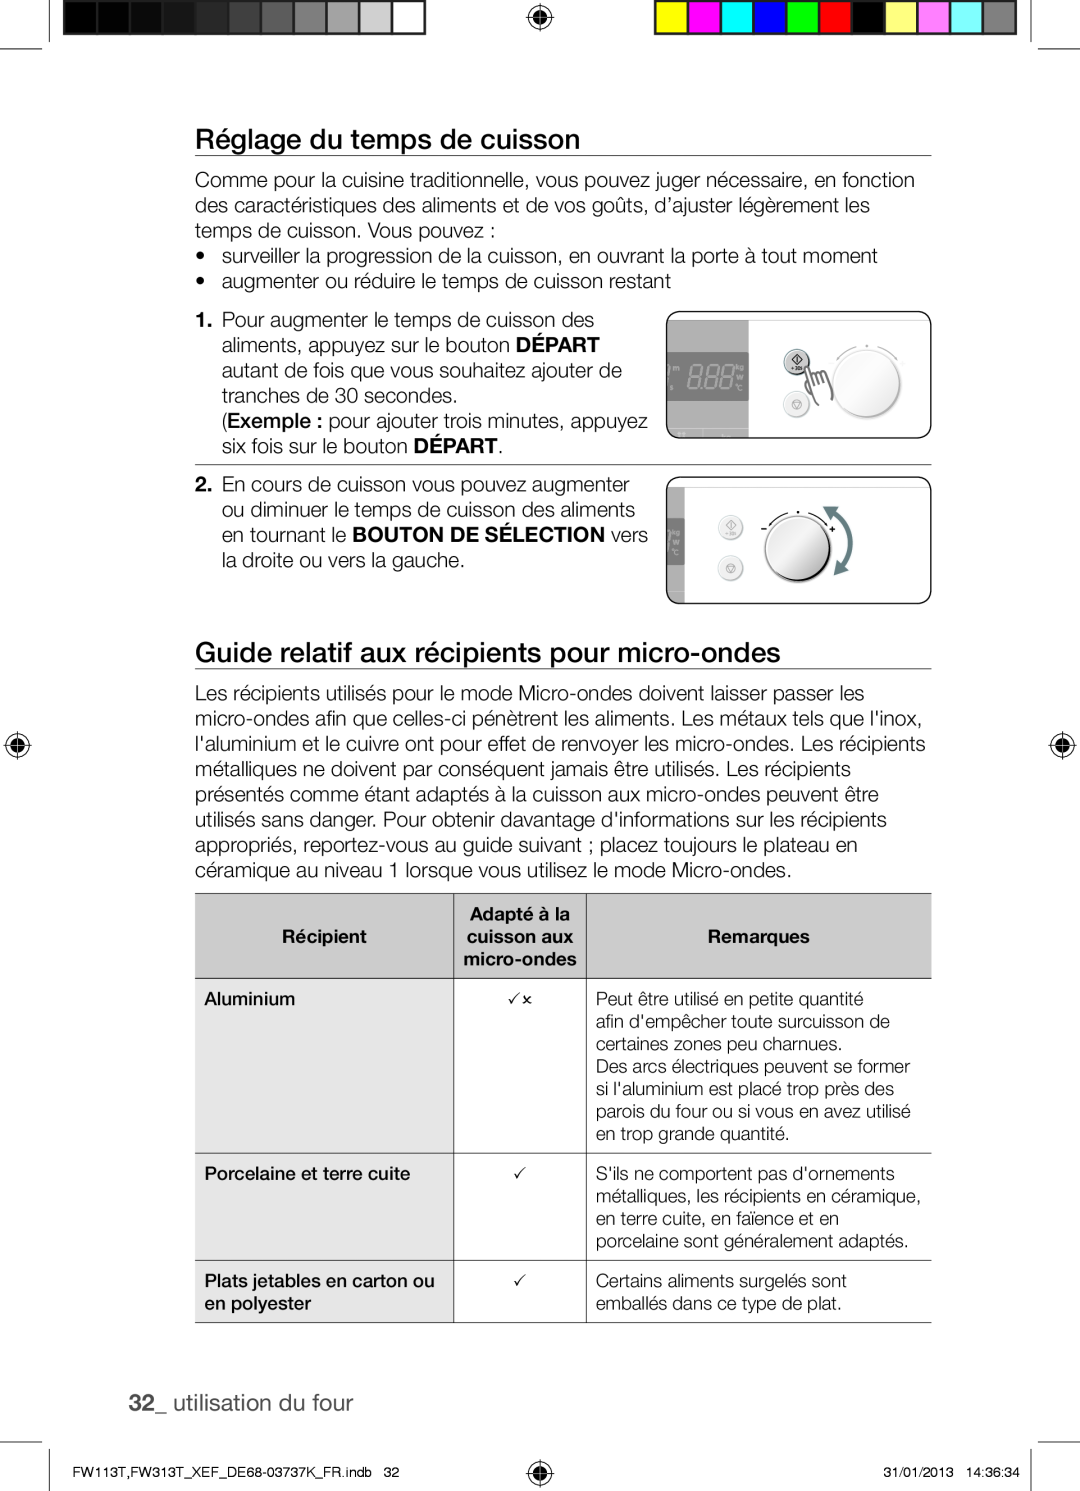 Samsung FW113T002/XEF Réglage du temps de cuisson, Guide relatif aux récipients pour micro-ondes, utilisation du four 